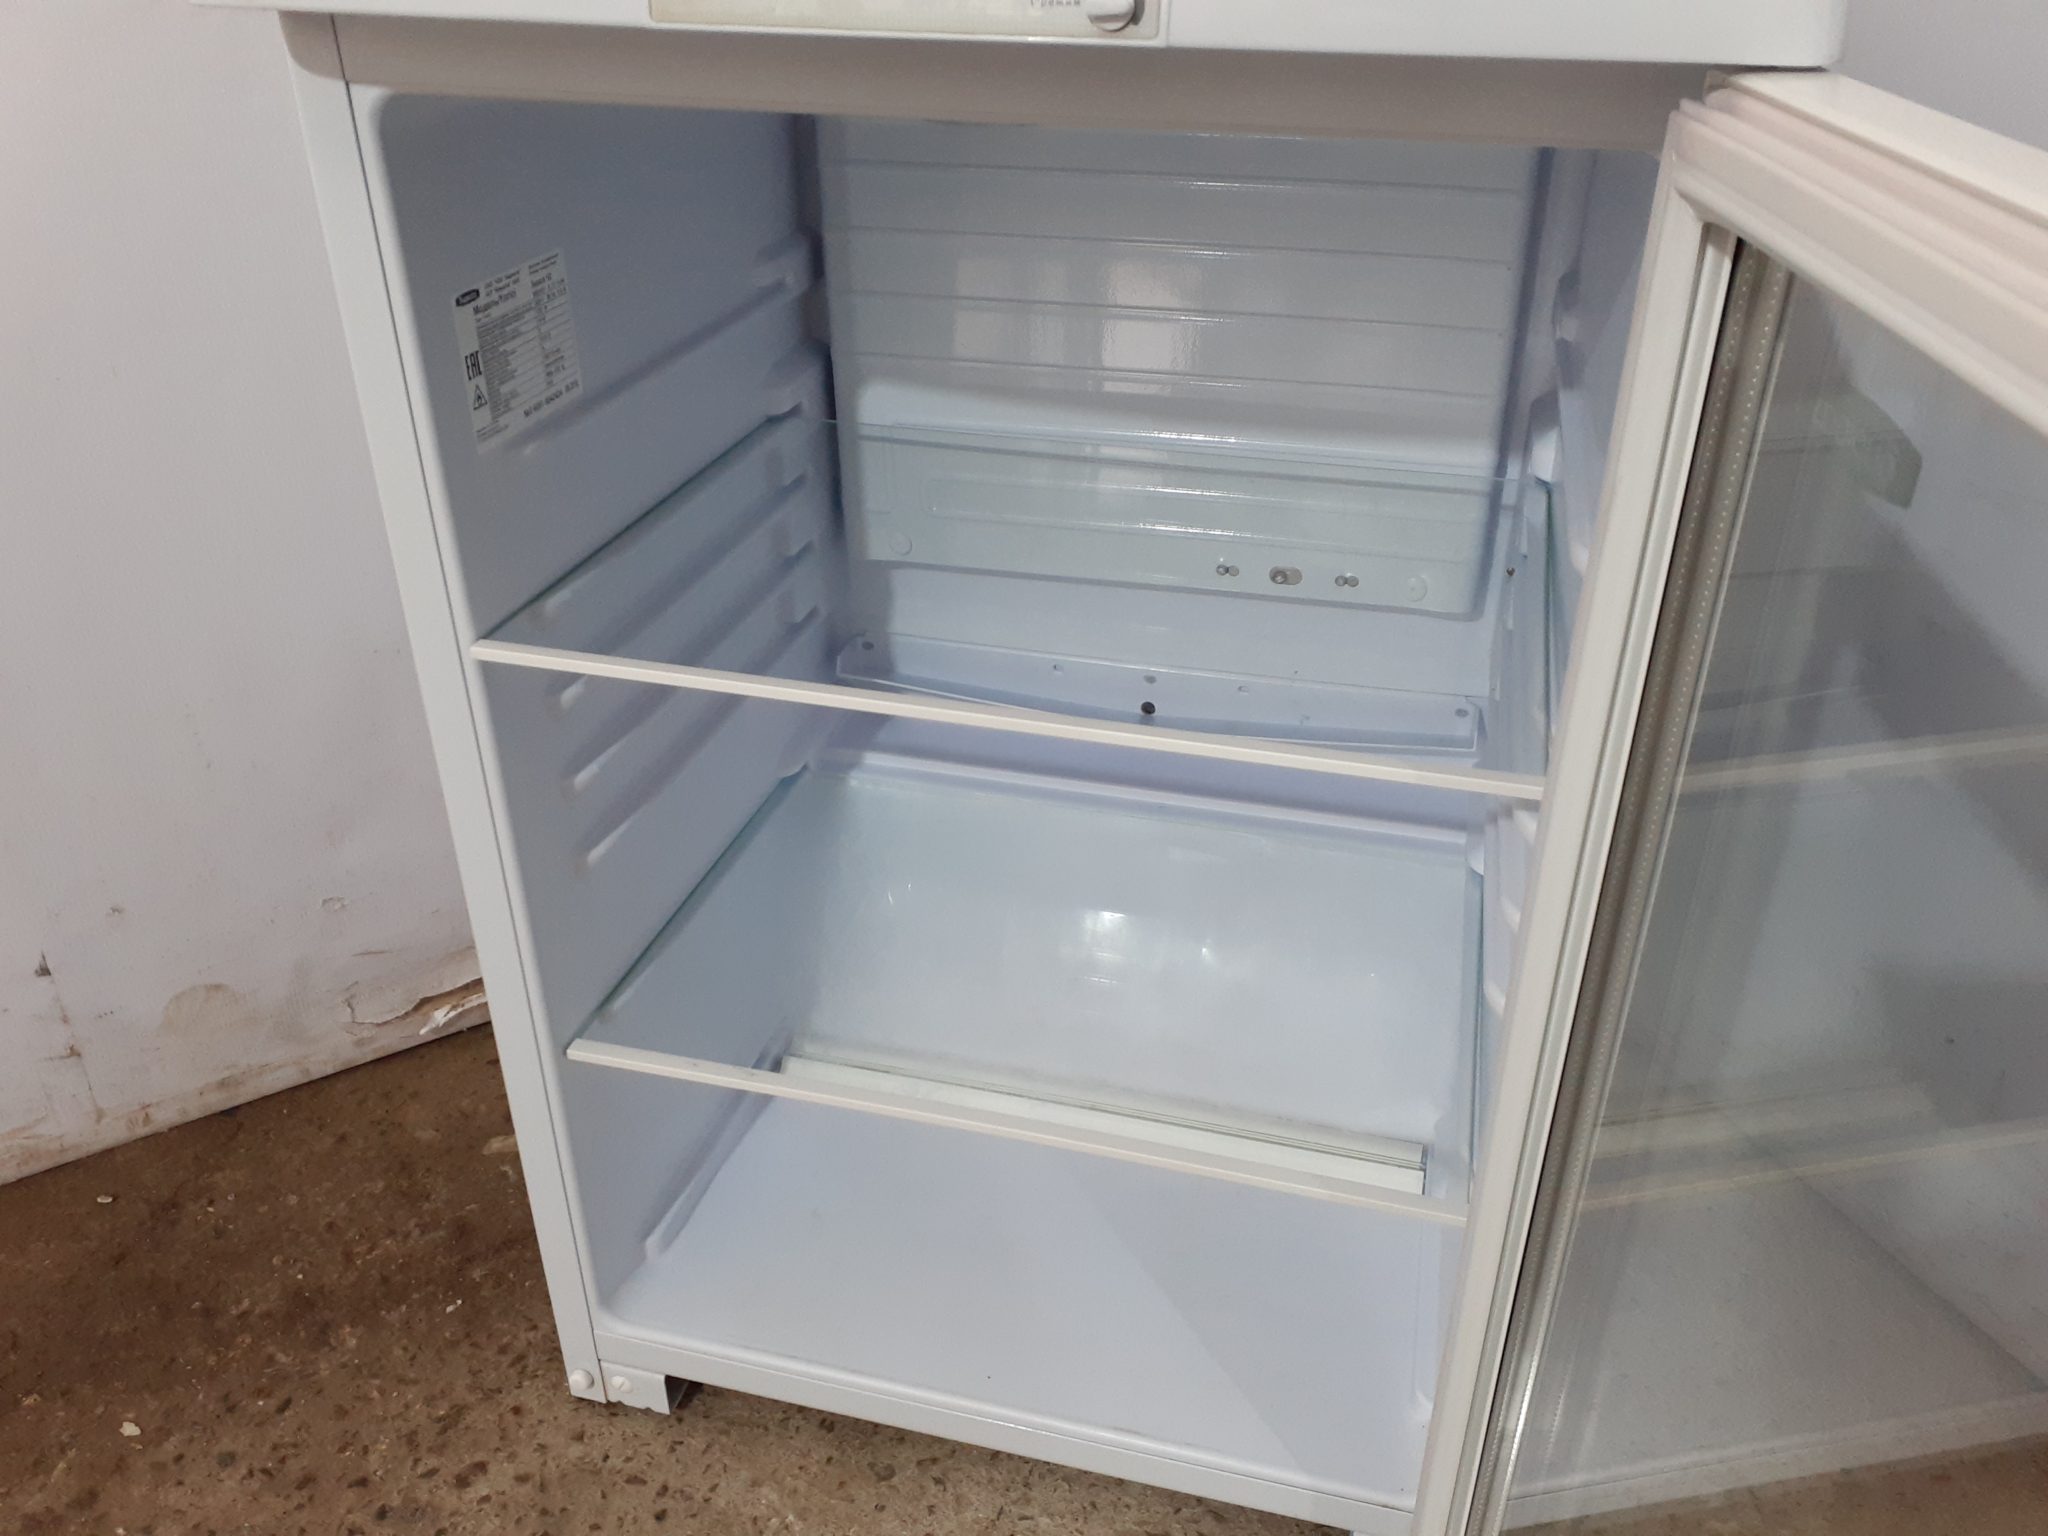 холодильный шкаф со стеклянной дверью бирюса